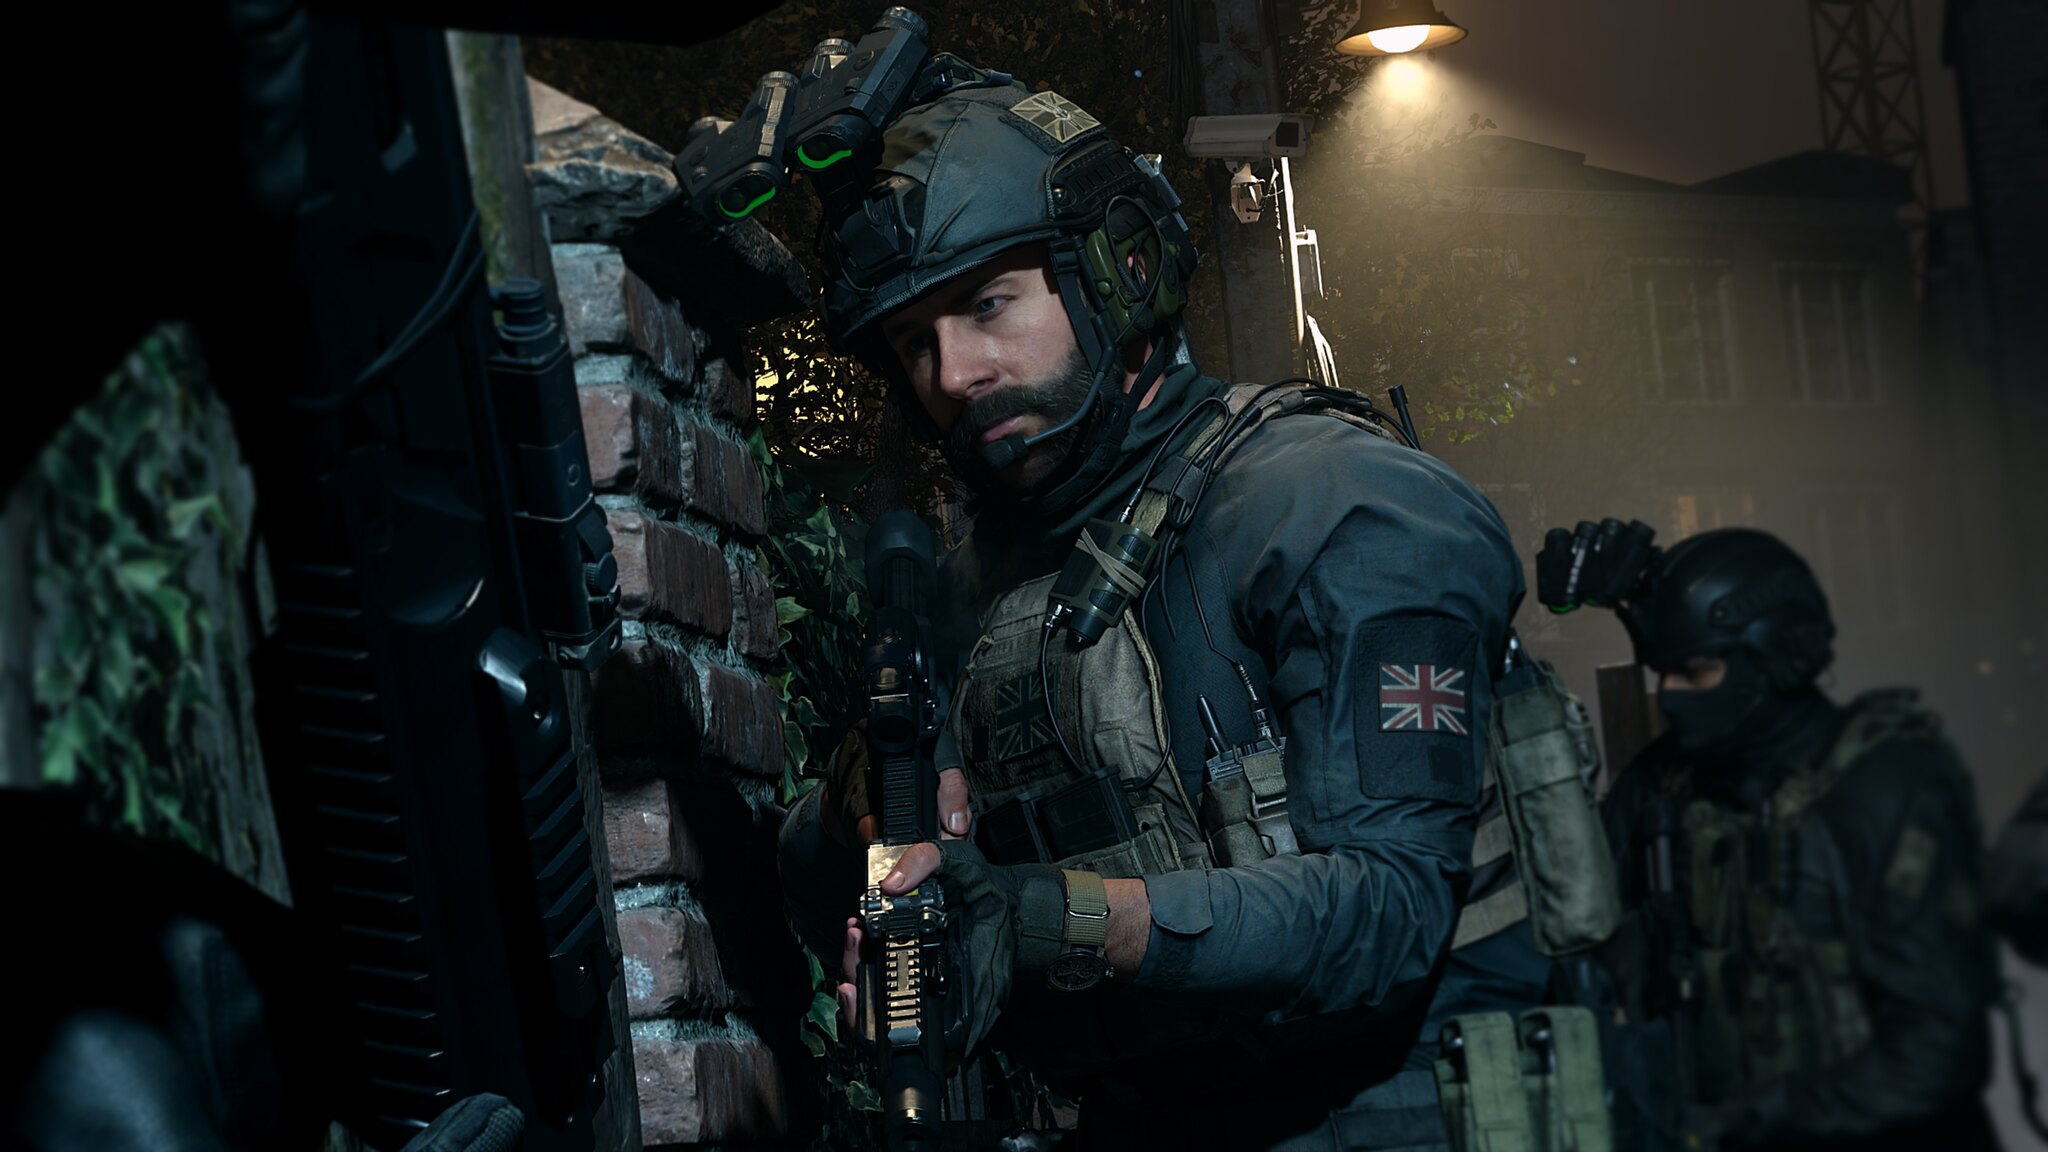 Скриншот ❤️🎮Call of Duty Modern Warfare XBOX ONE+Series X|S🥇✅